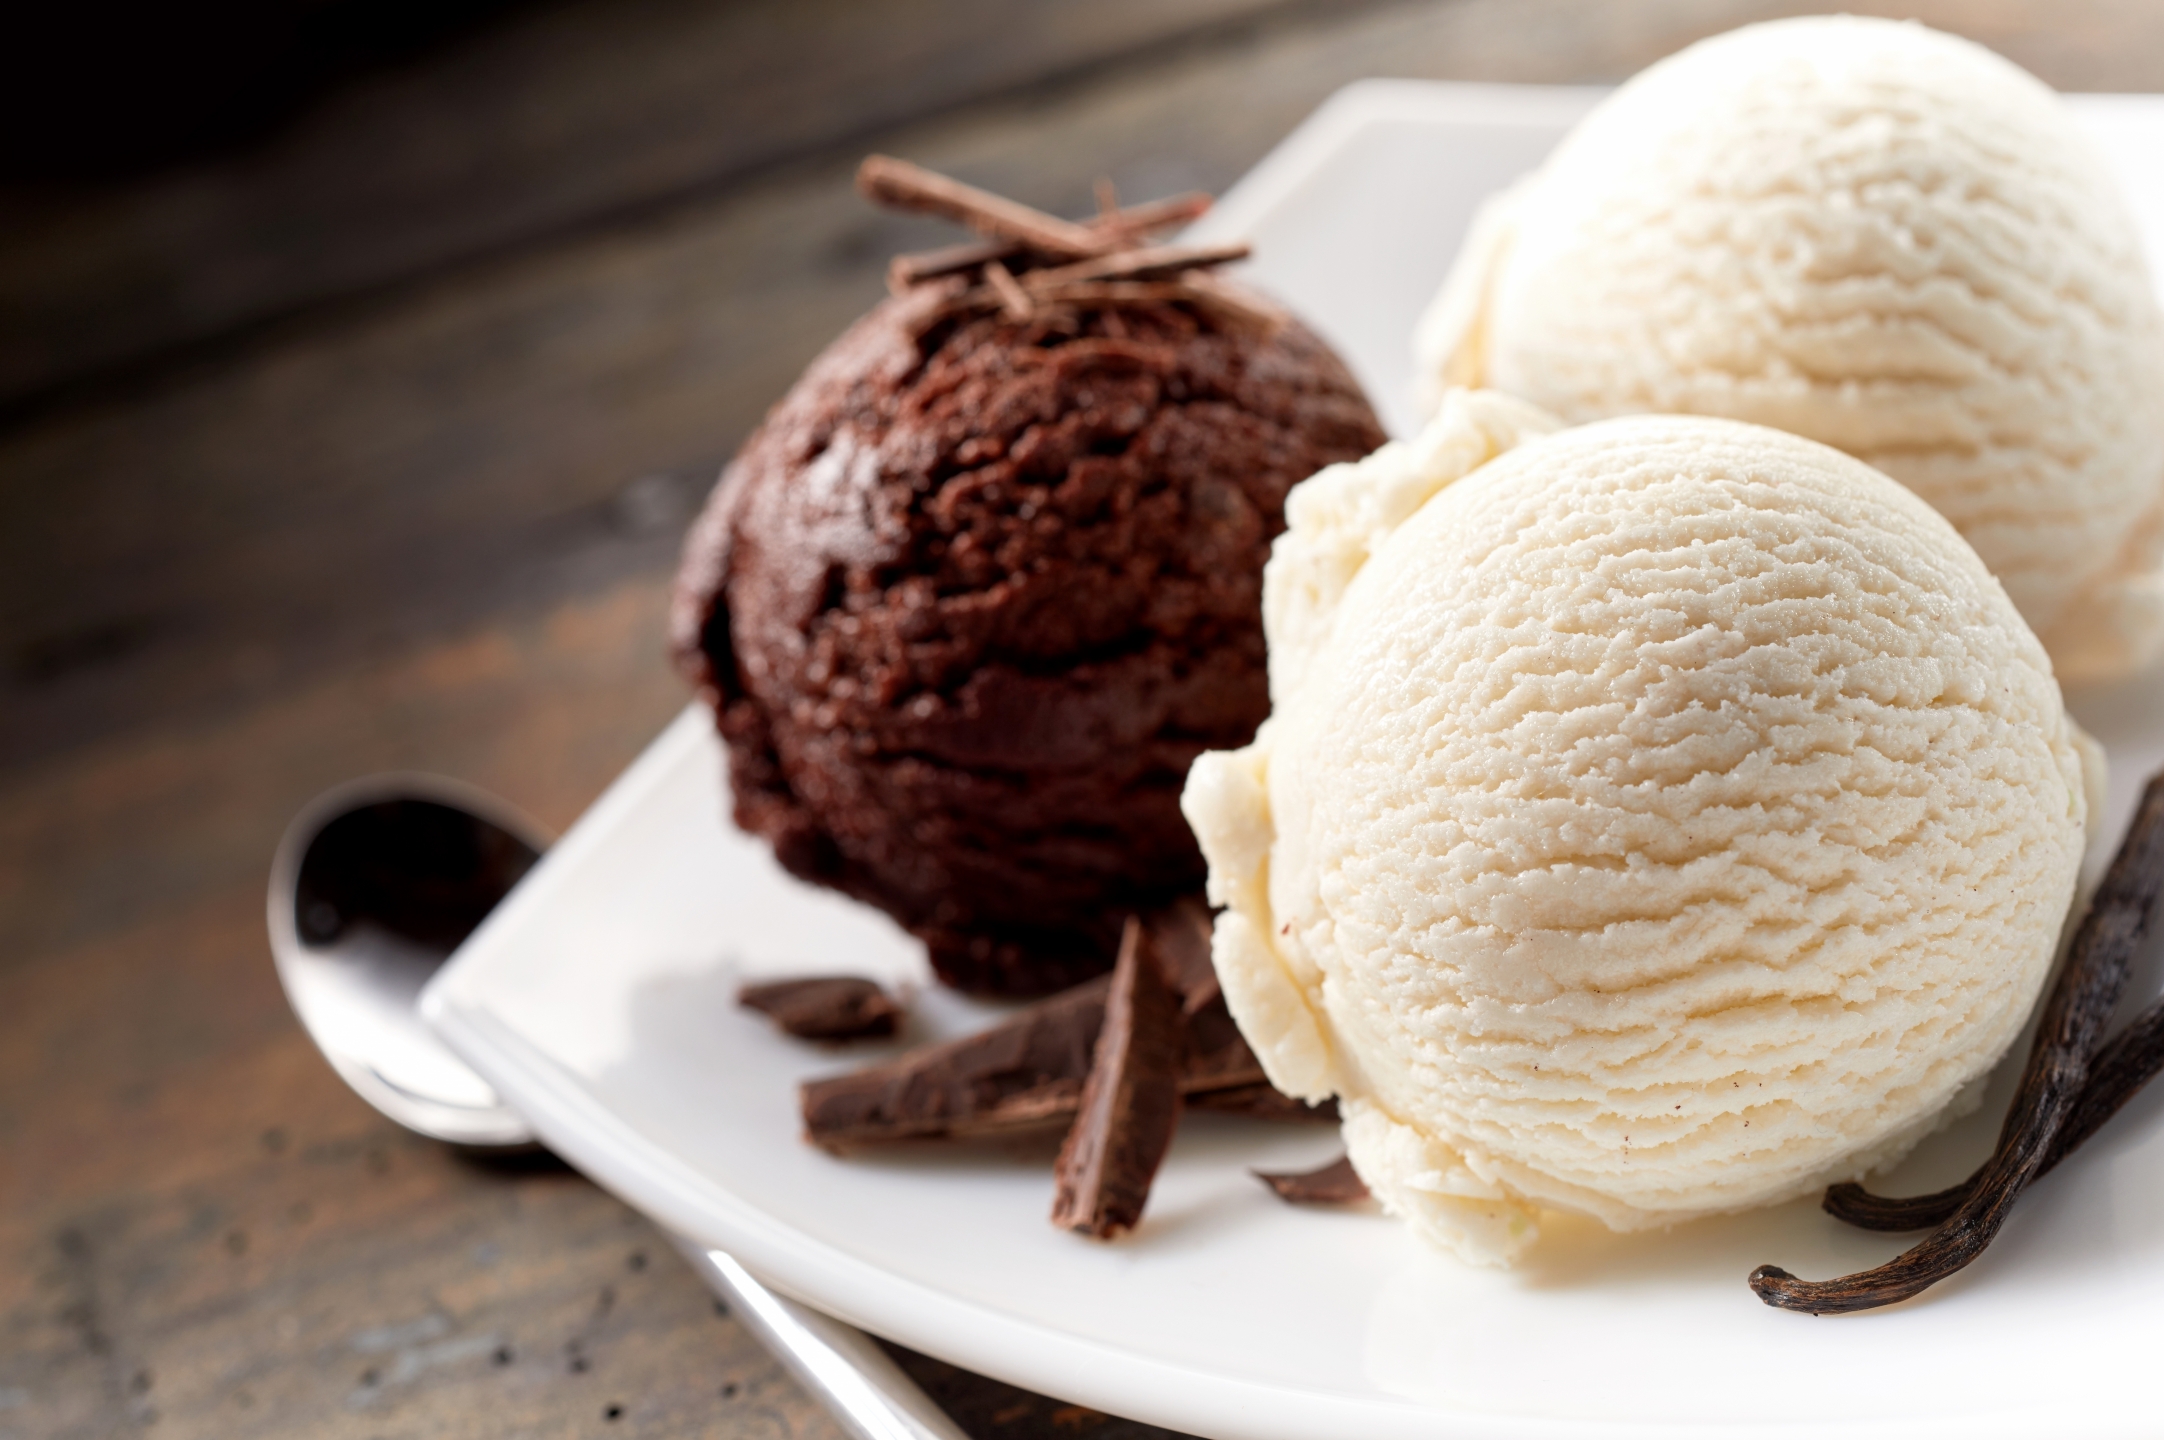 明治巧克力冰淇淋,明治香草冰淇淋